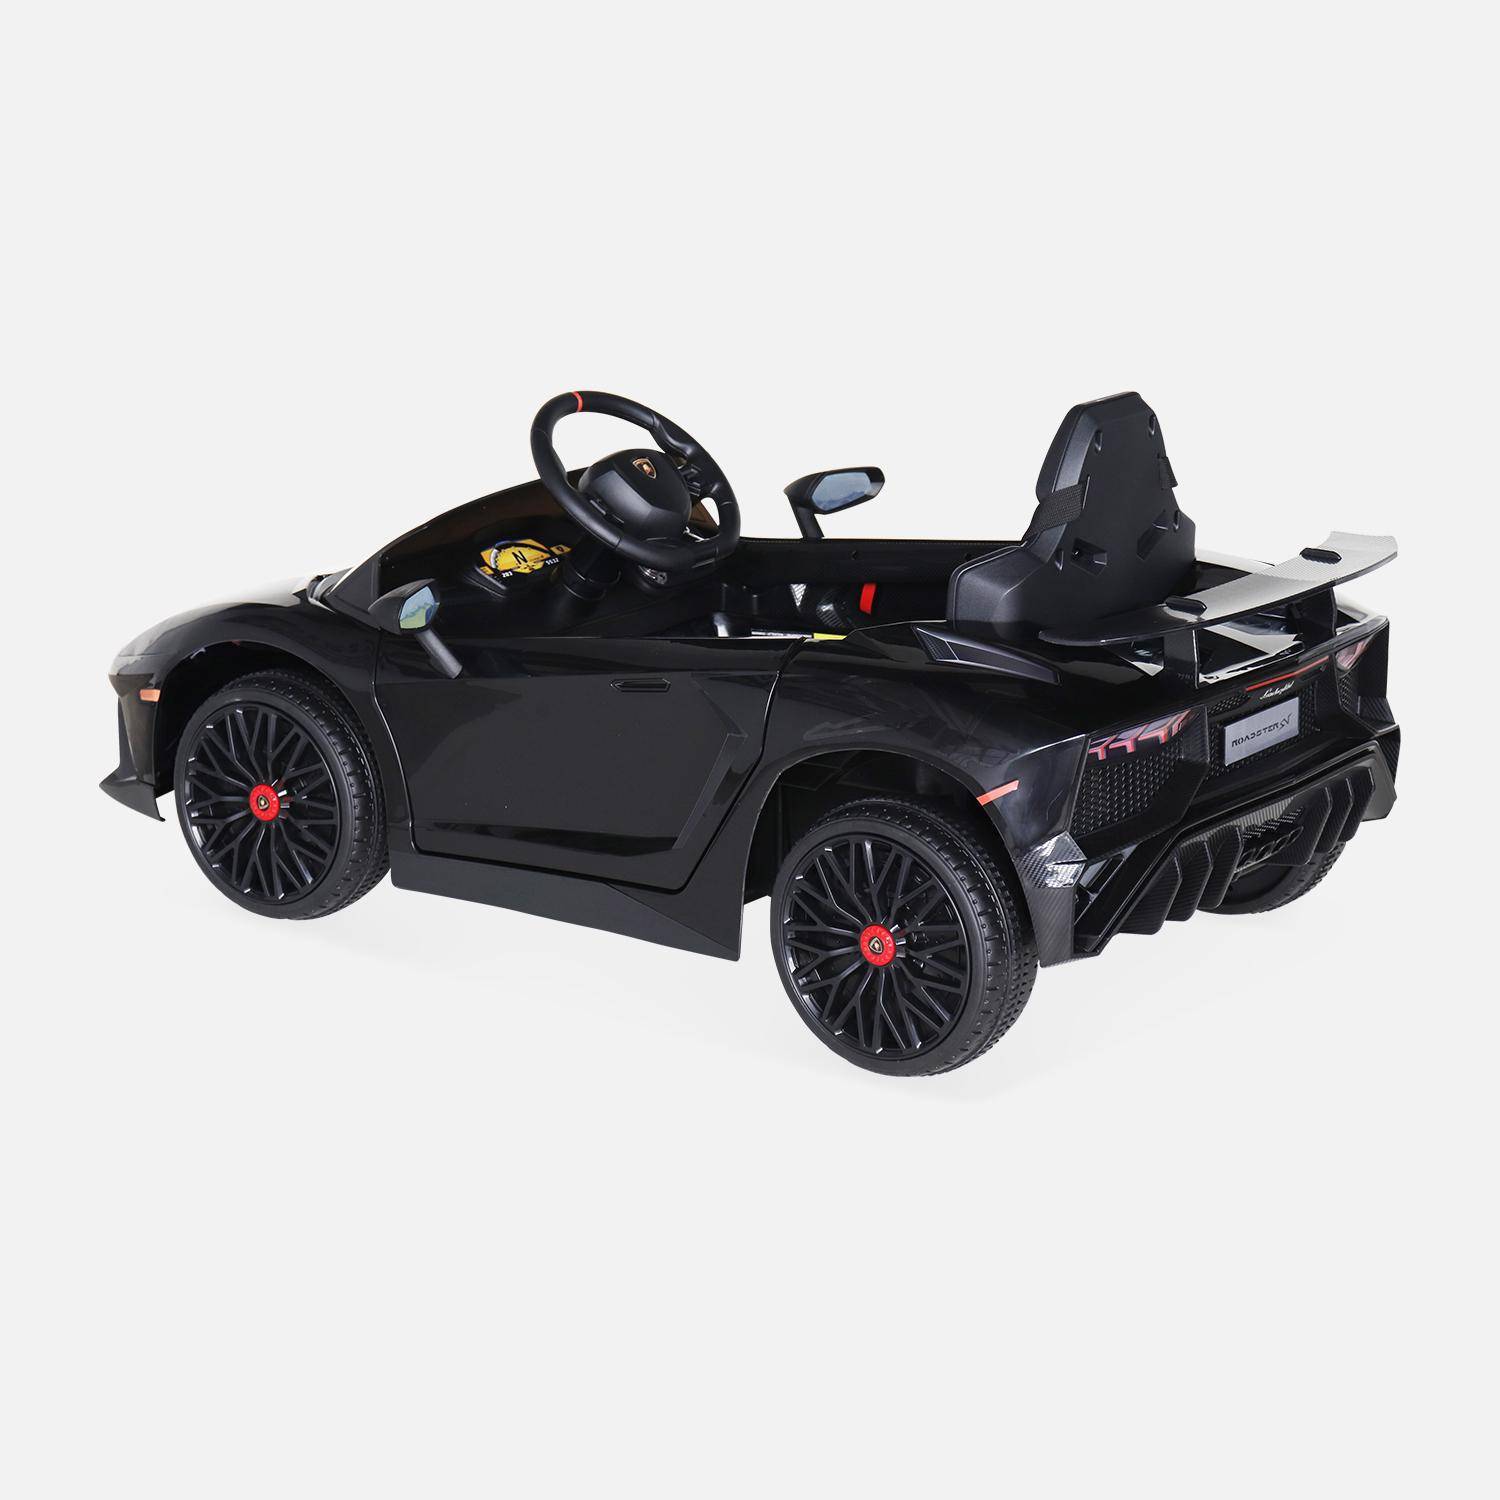 12V Lamborghini elektrische kinderauto, zwart, 1 zitplaats, met radio, afstandsbediening, MP3, USB-poort en functionele koplampen,sweeek,Photo4